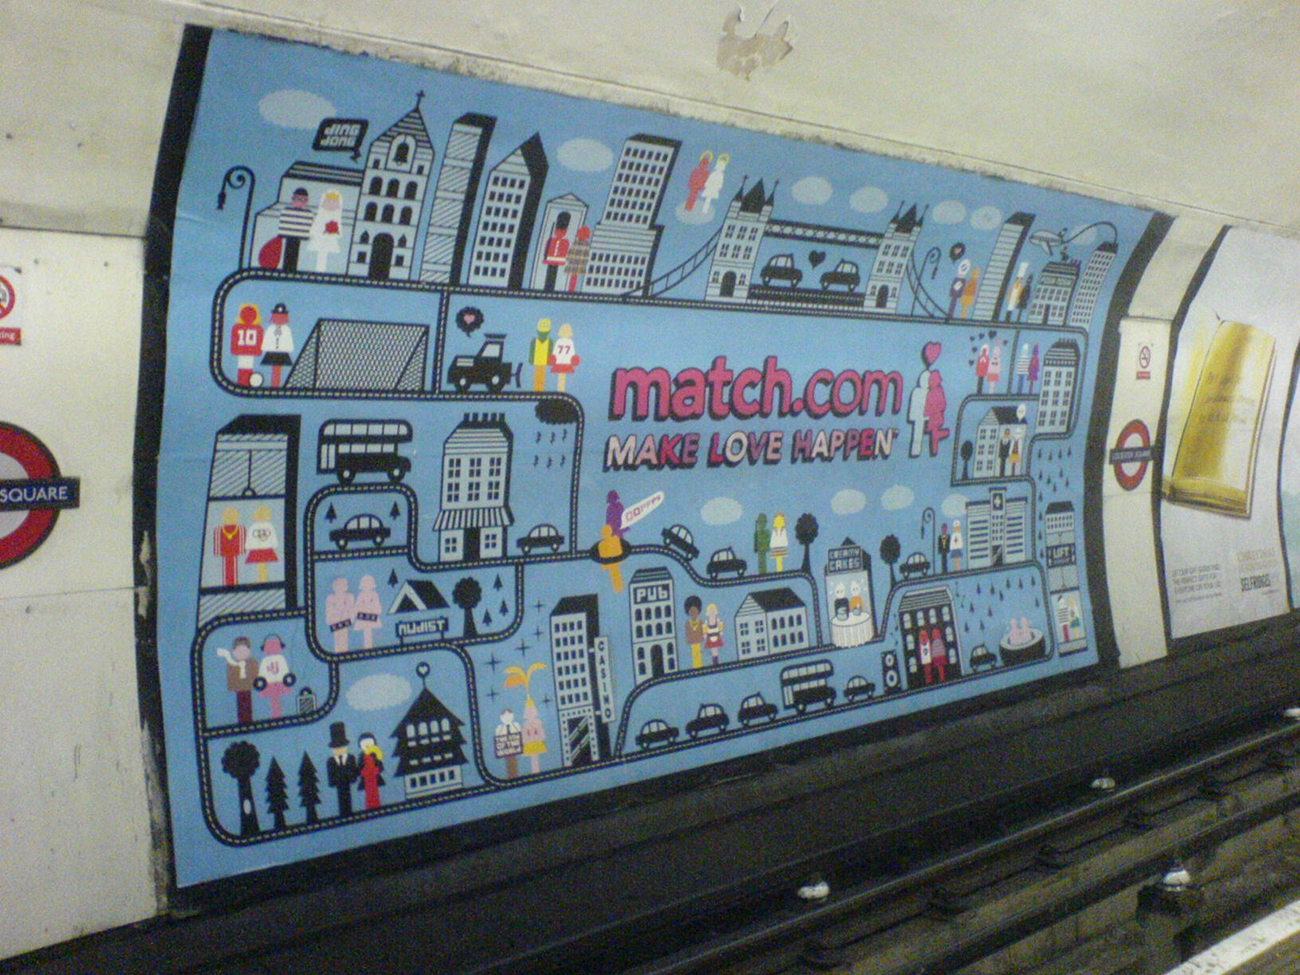 地铁墙上画着一则大型的Match dot com广告。 它显示了一个充满情侣的卡通城市。 标题是，让爱情发生。